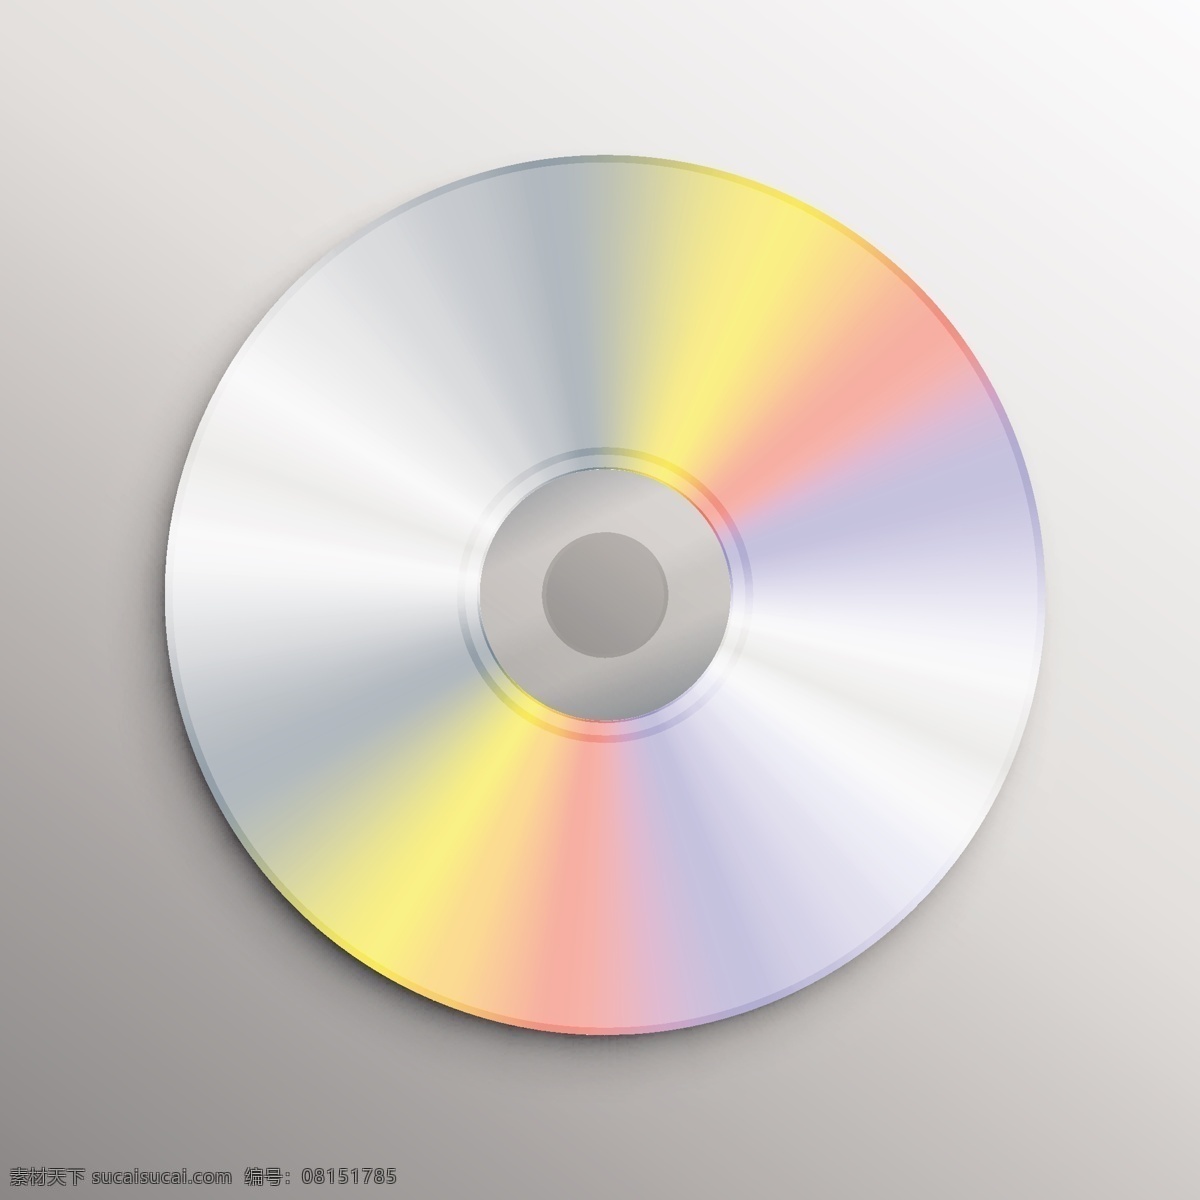 写实 风格 cd 光盘 模型 写实风格 cd光盘